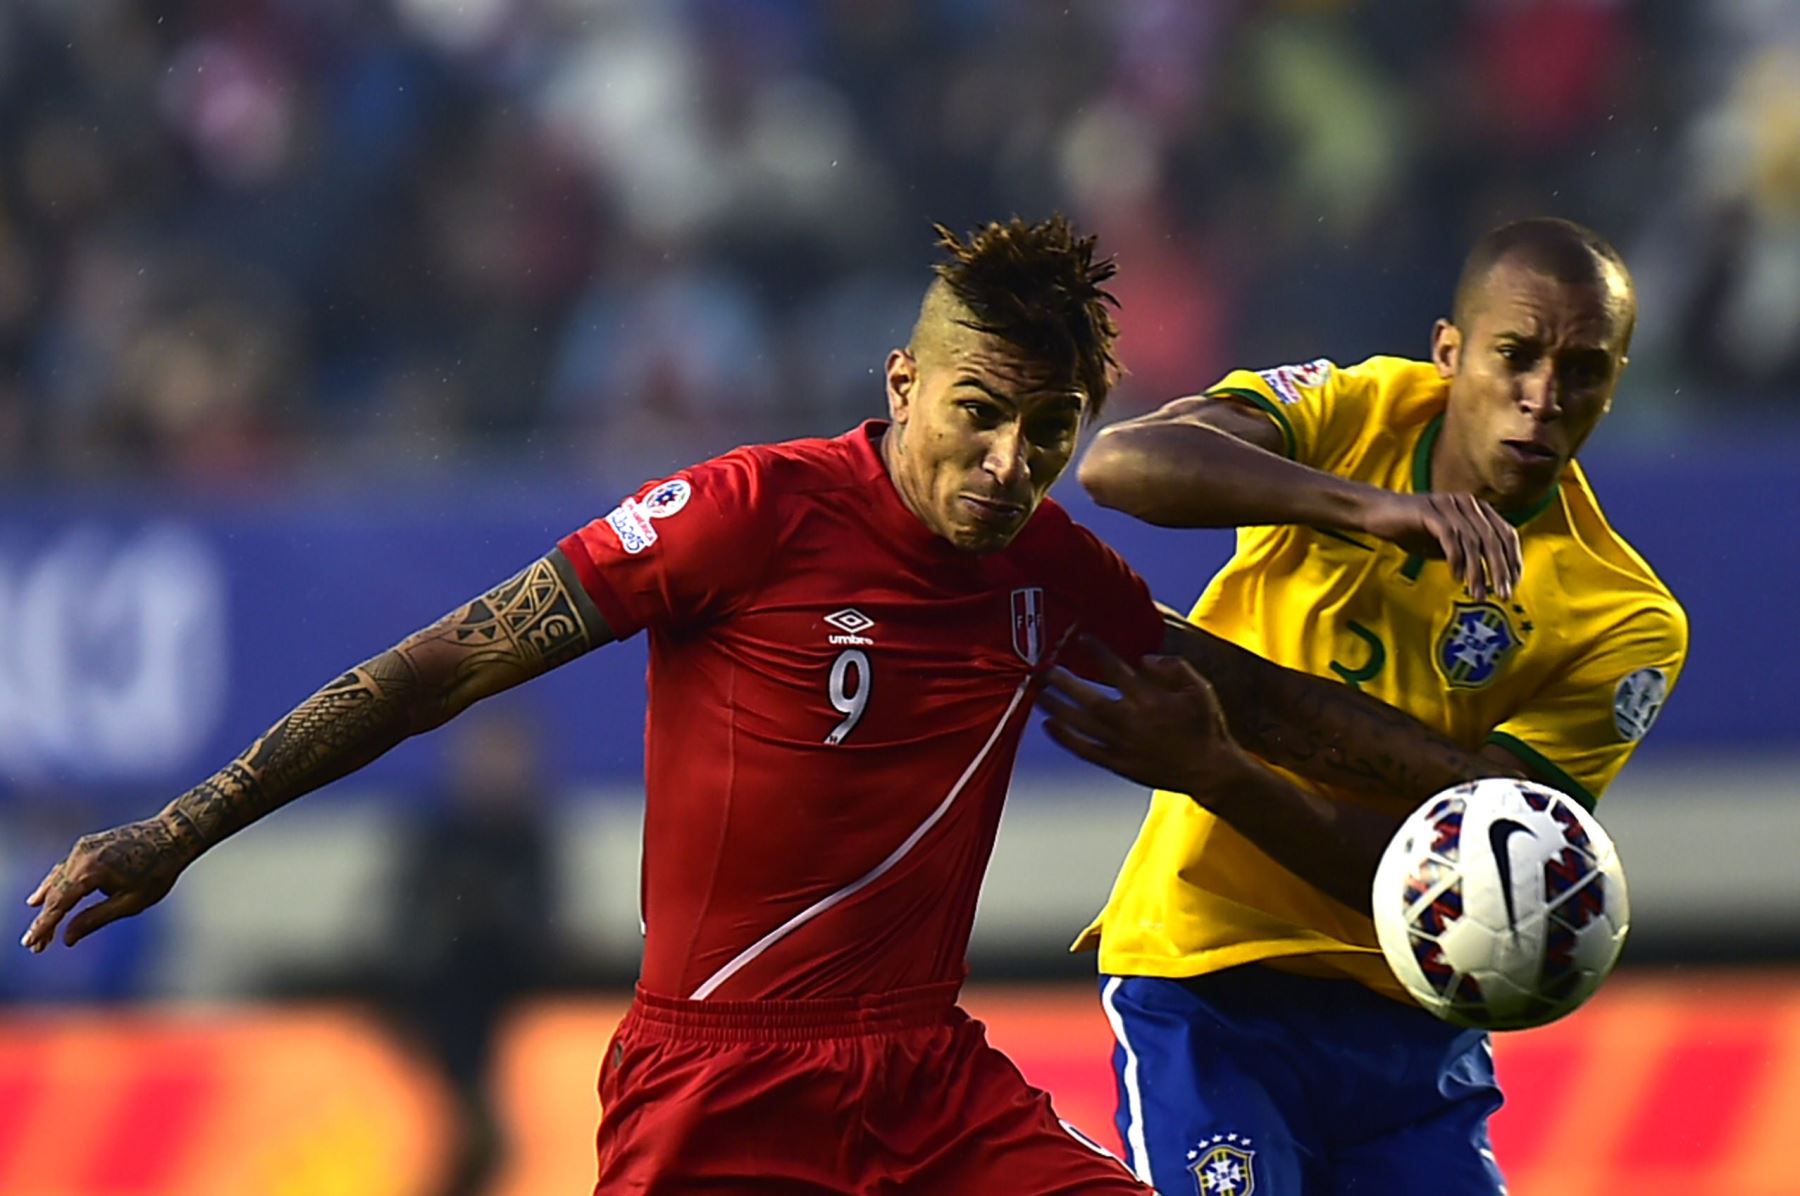 El defensa brasileño Miranda y el delantero peruano Paolo Guerrero compiten por el balón durante su partido por el campeonato de fútbol de la Copa América 2015. ANDINA/archivo